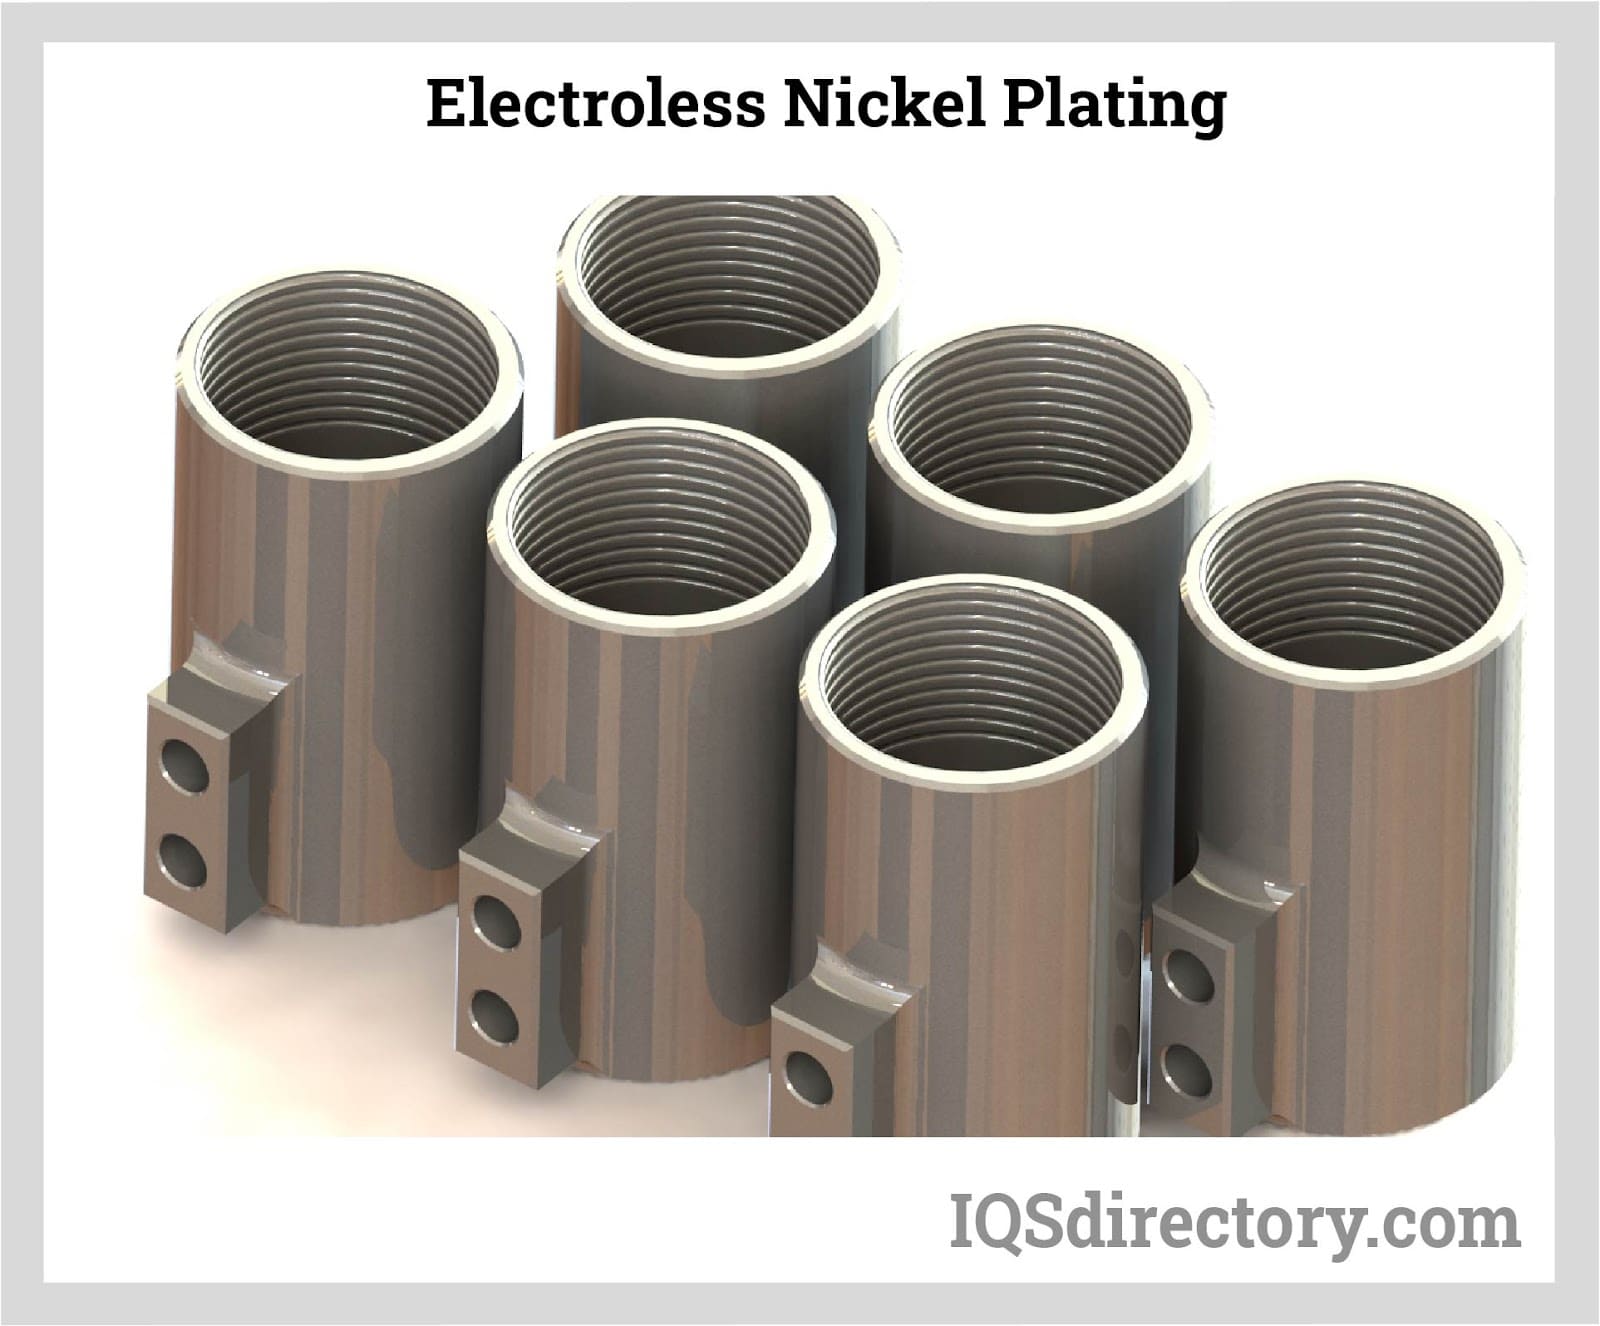 Electroless Nickel Plating